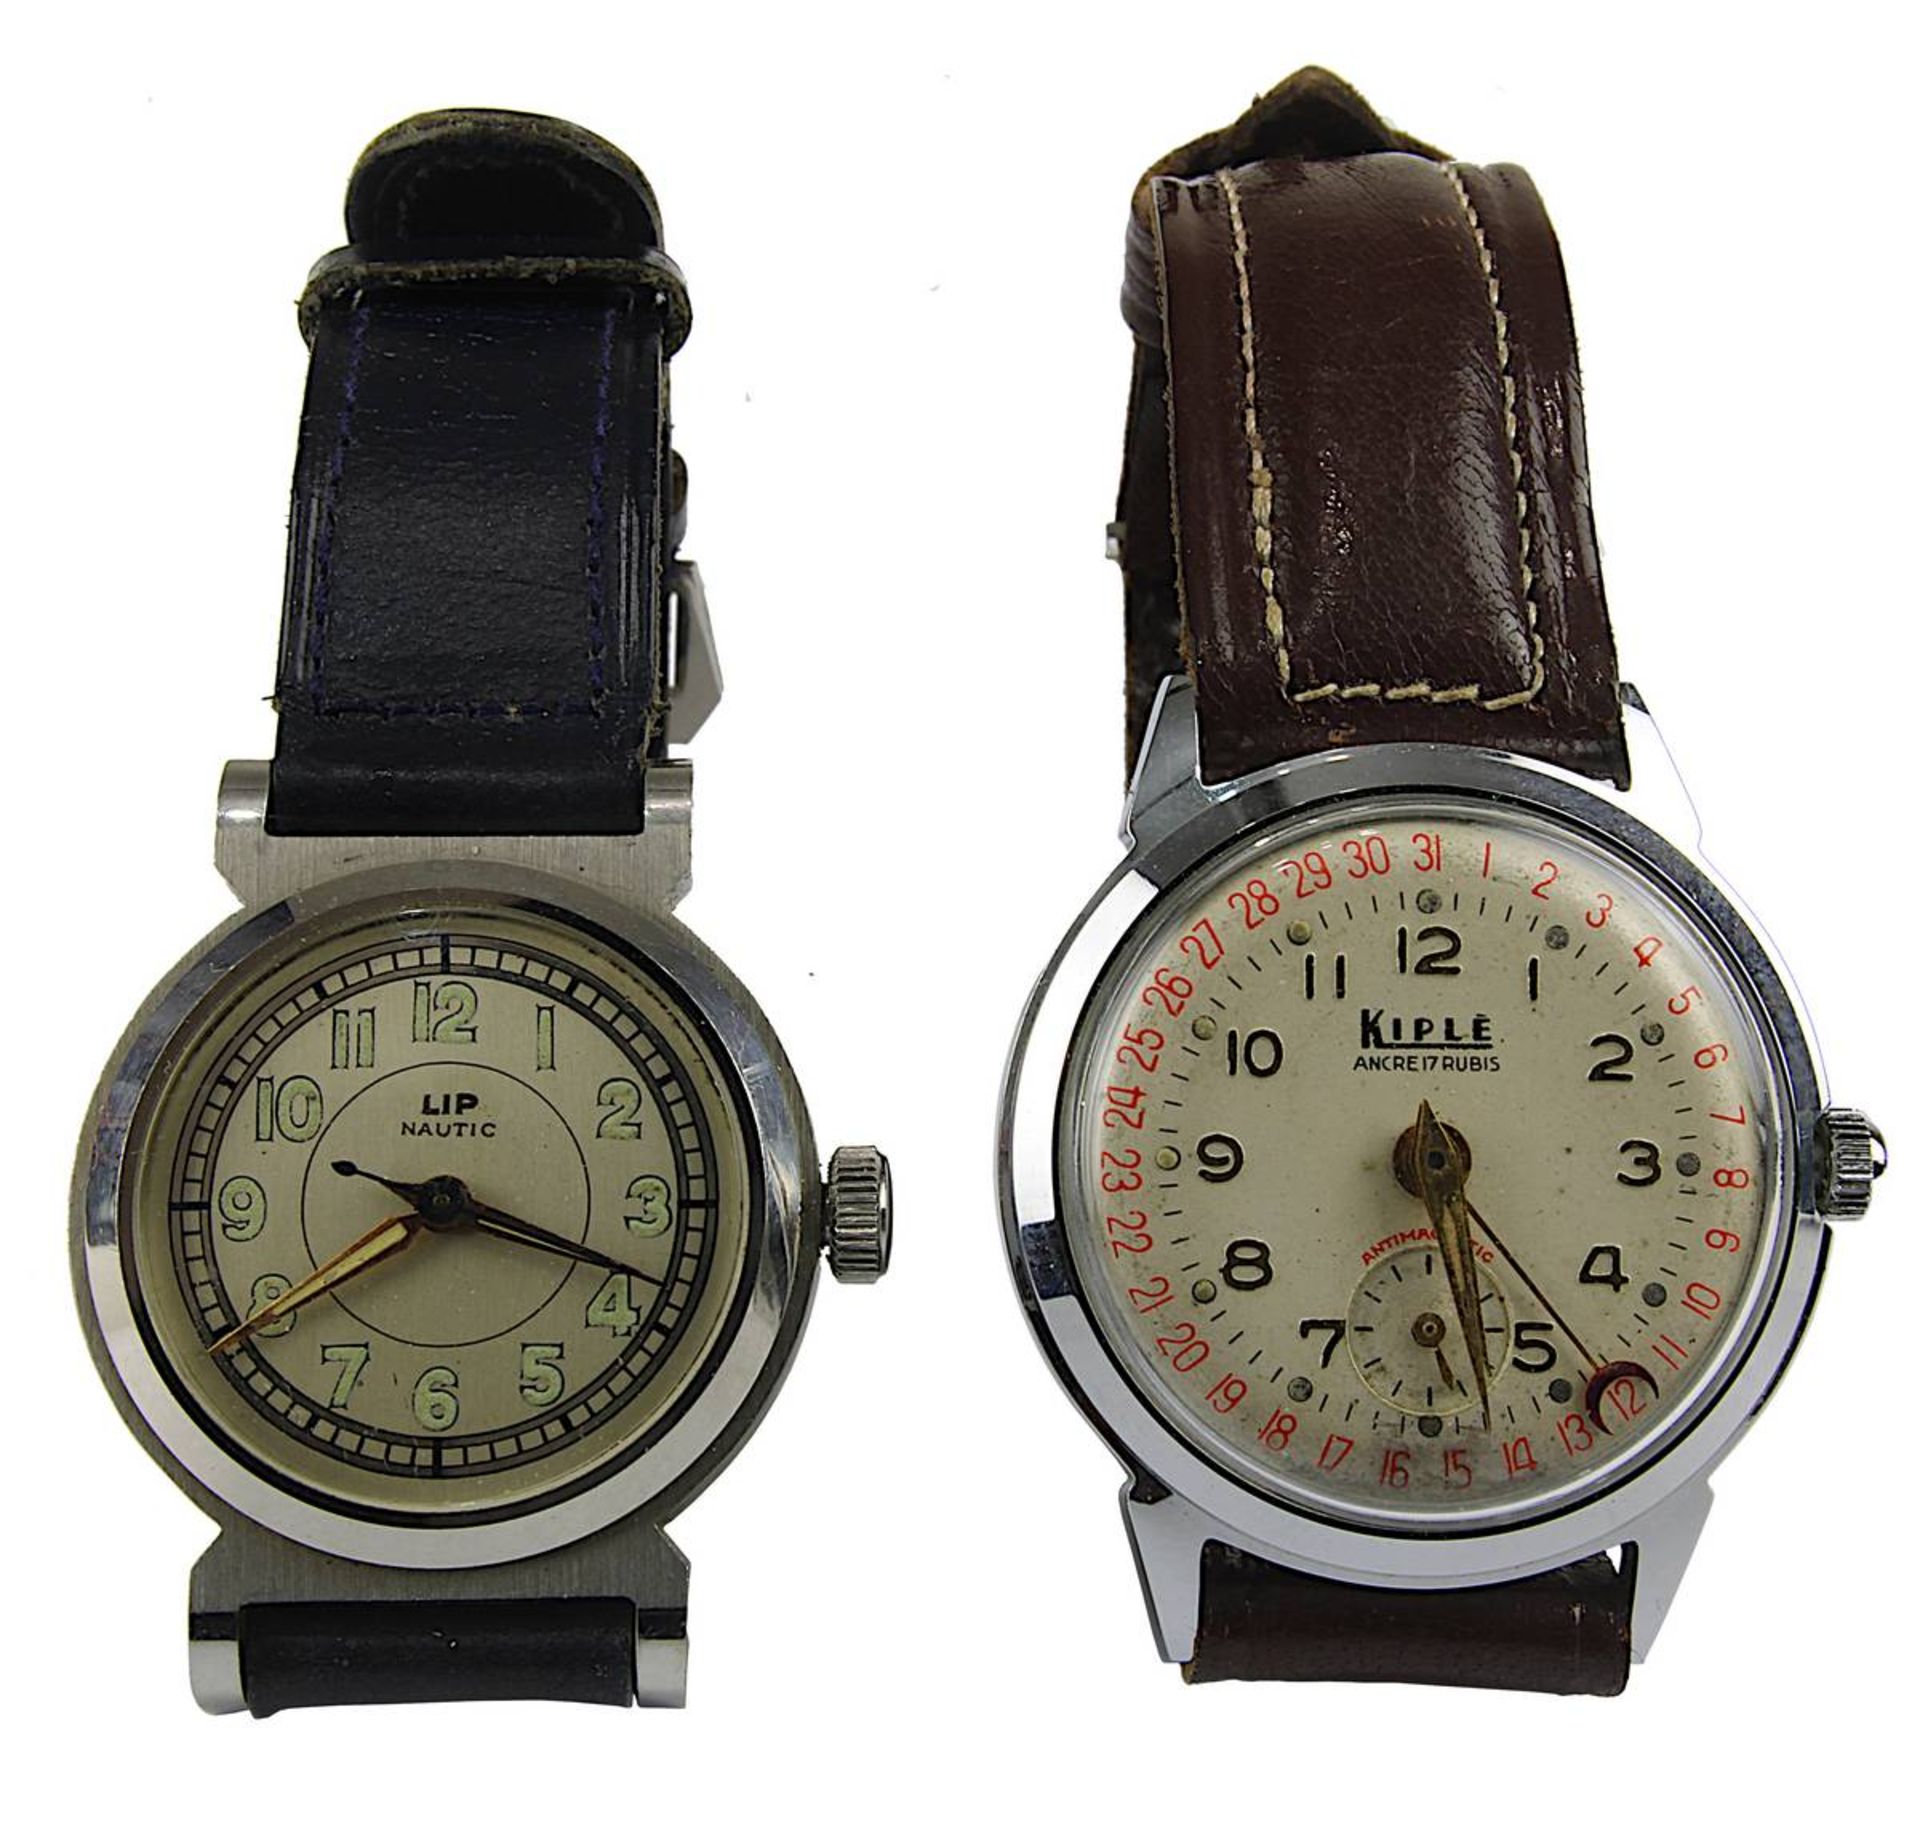 2 Herren-Armbanduhren Lip Nautic bzw. Kiplé,1950er Jahre: Lip Nautic mit Handaufzugswerk,